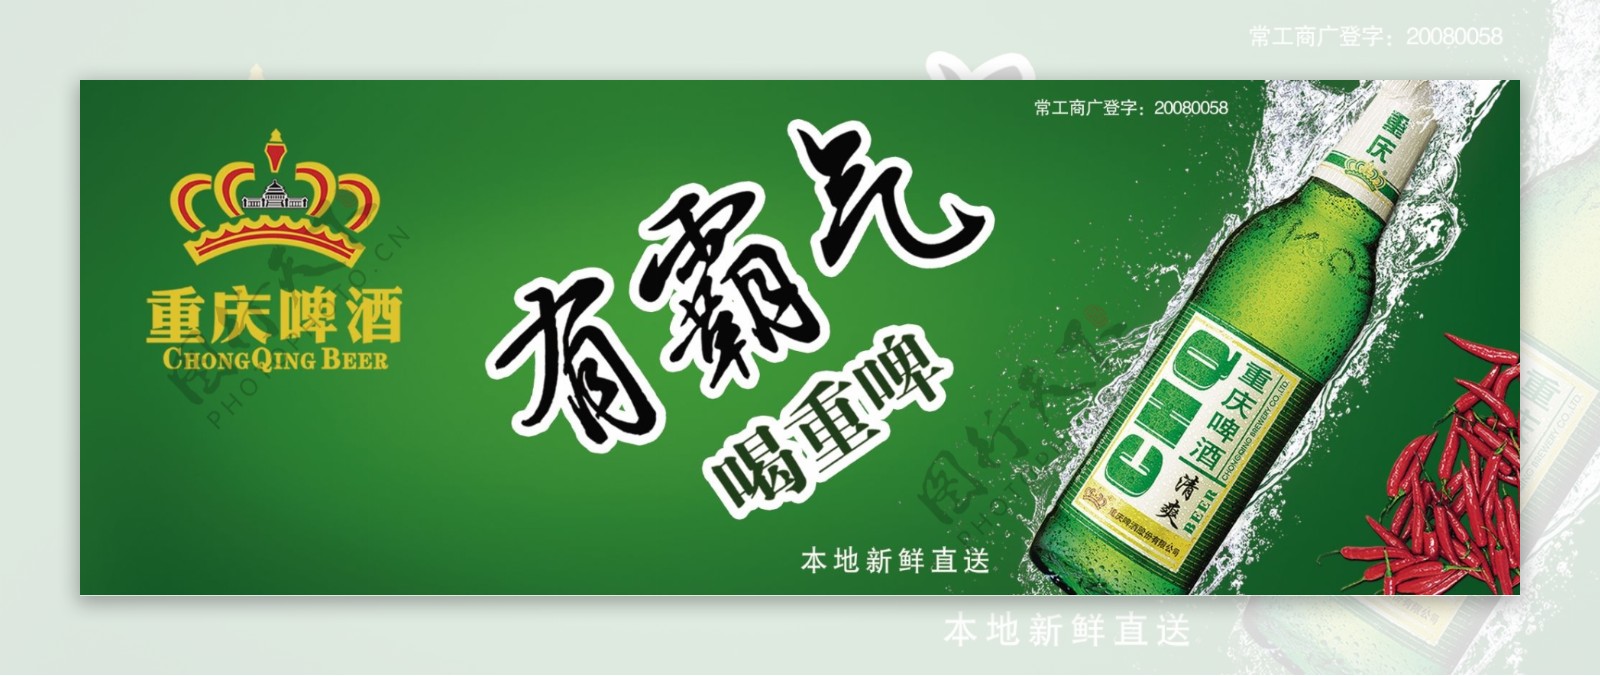 重庆啤酒海报图片